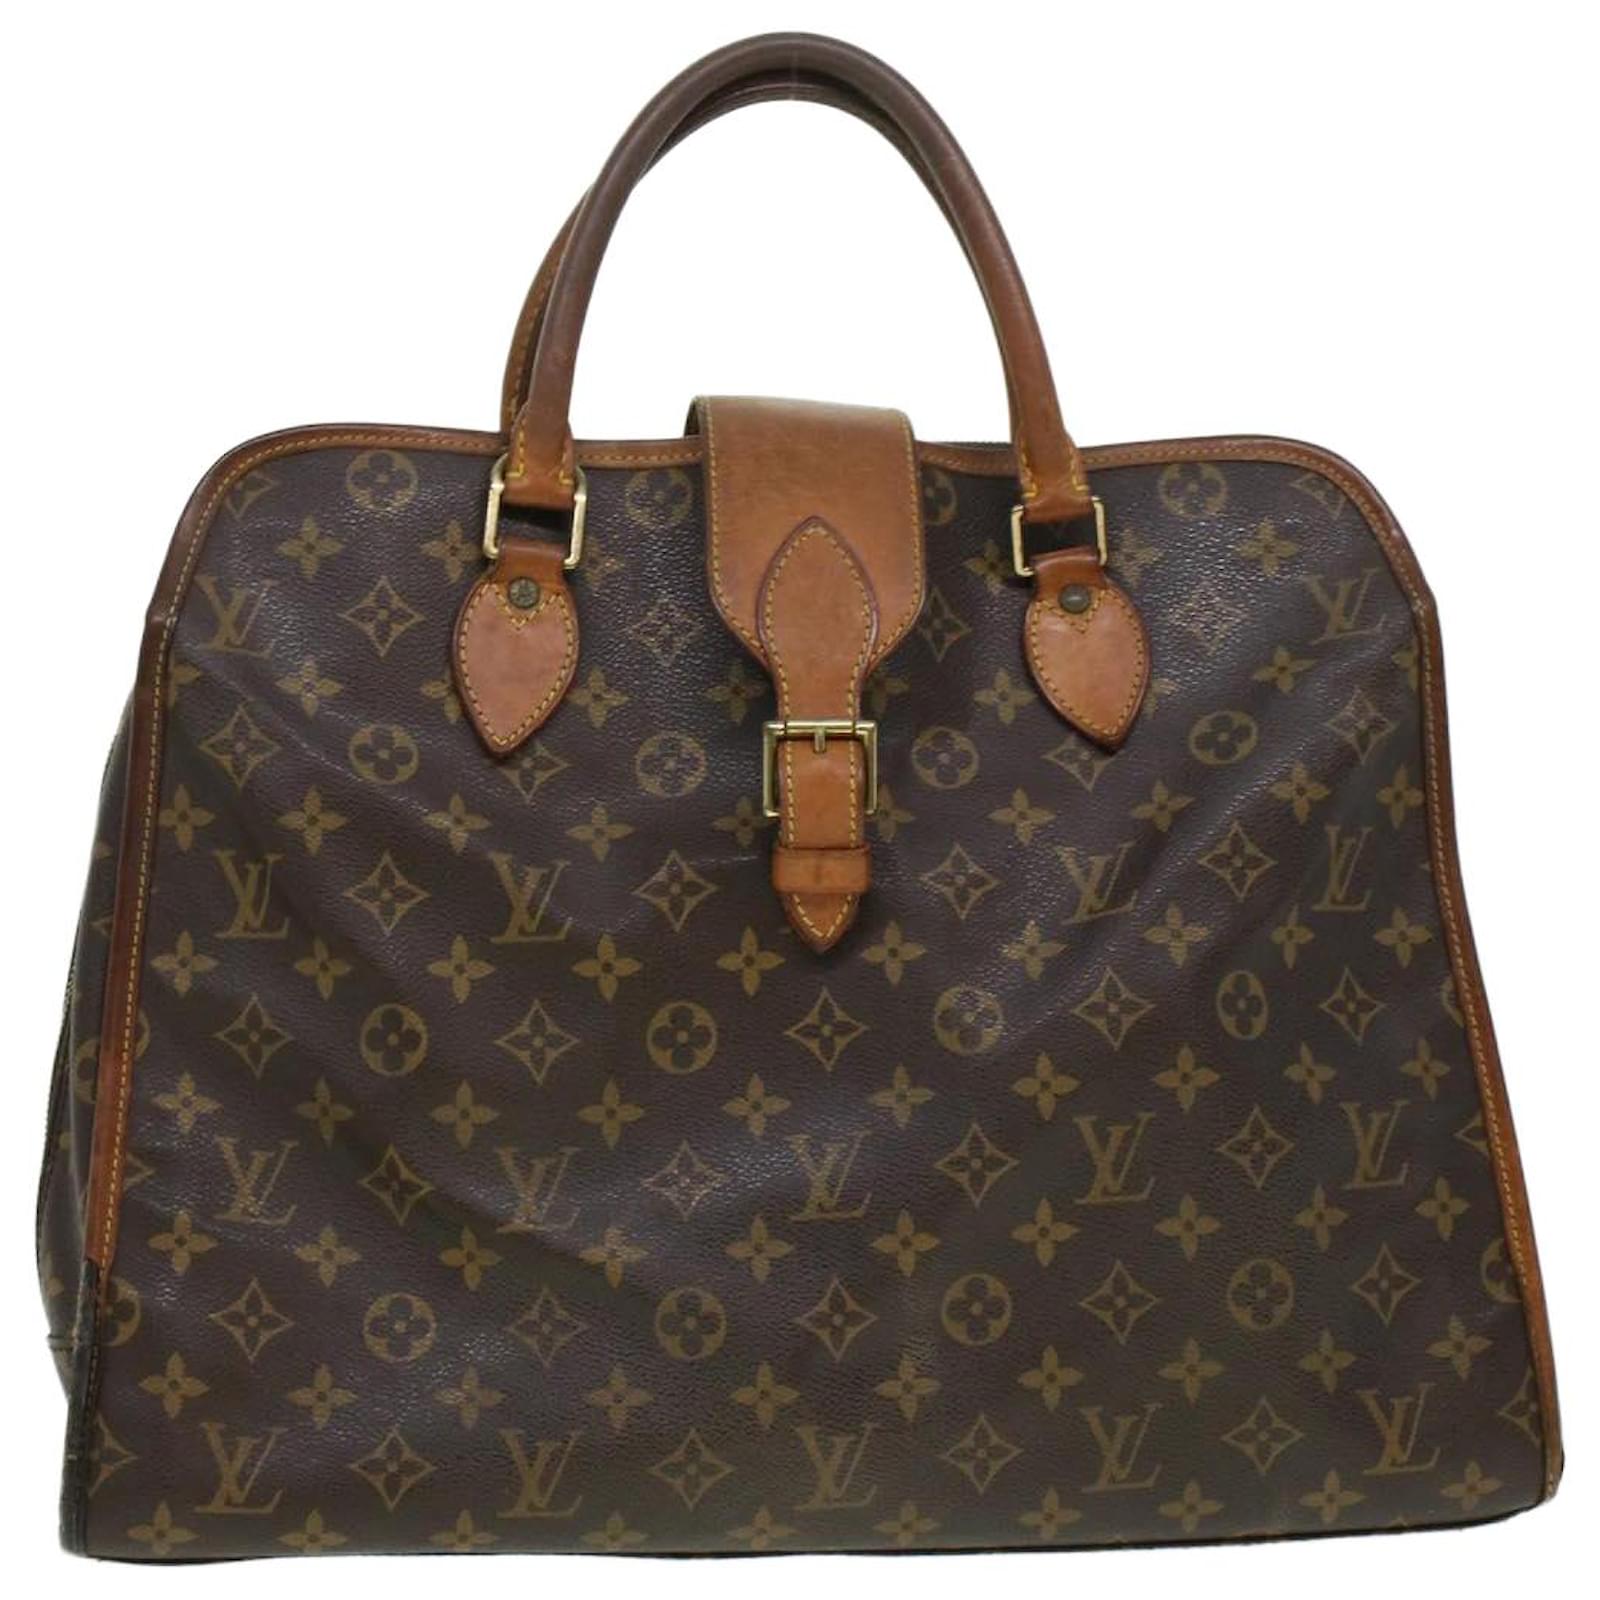 LOUIS VUITTON Louis Vuitton Rivoli Monogram Handbag